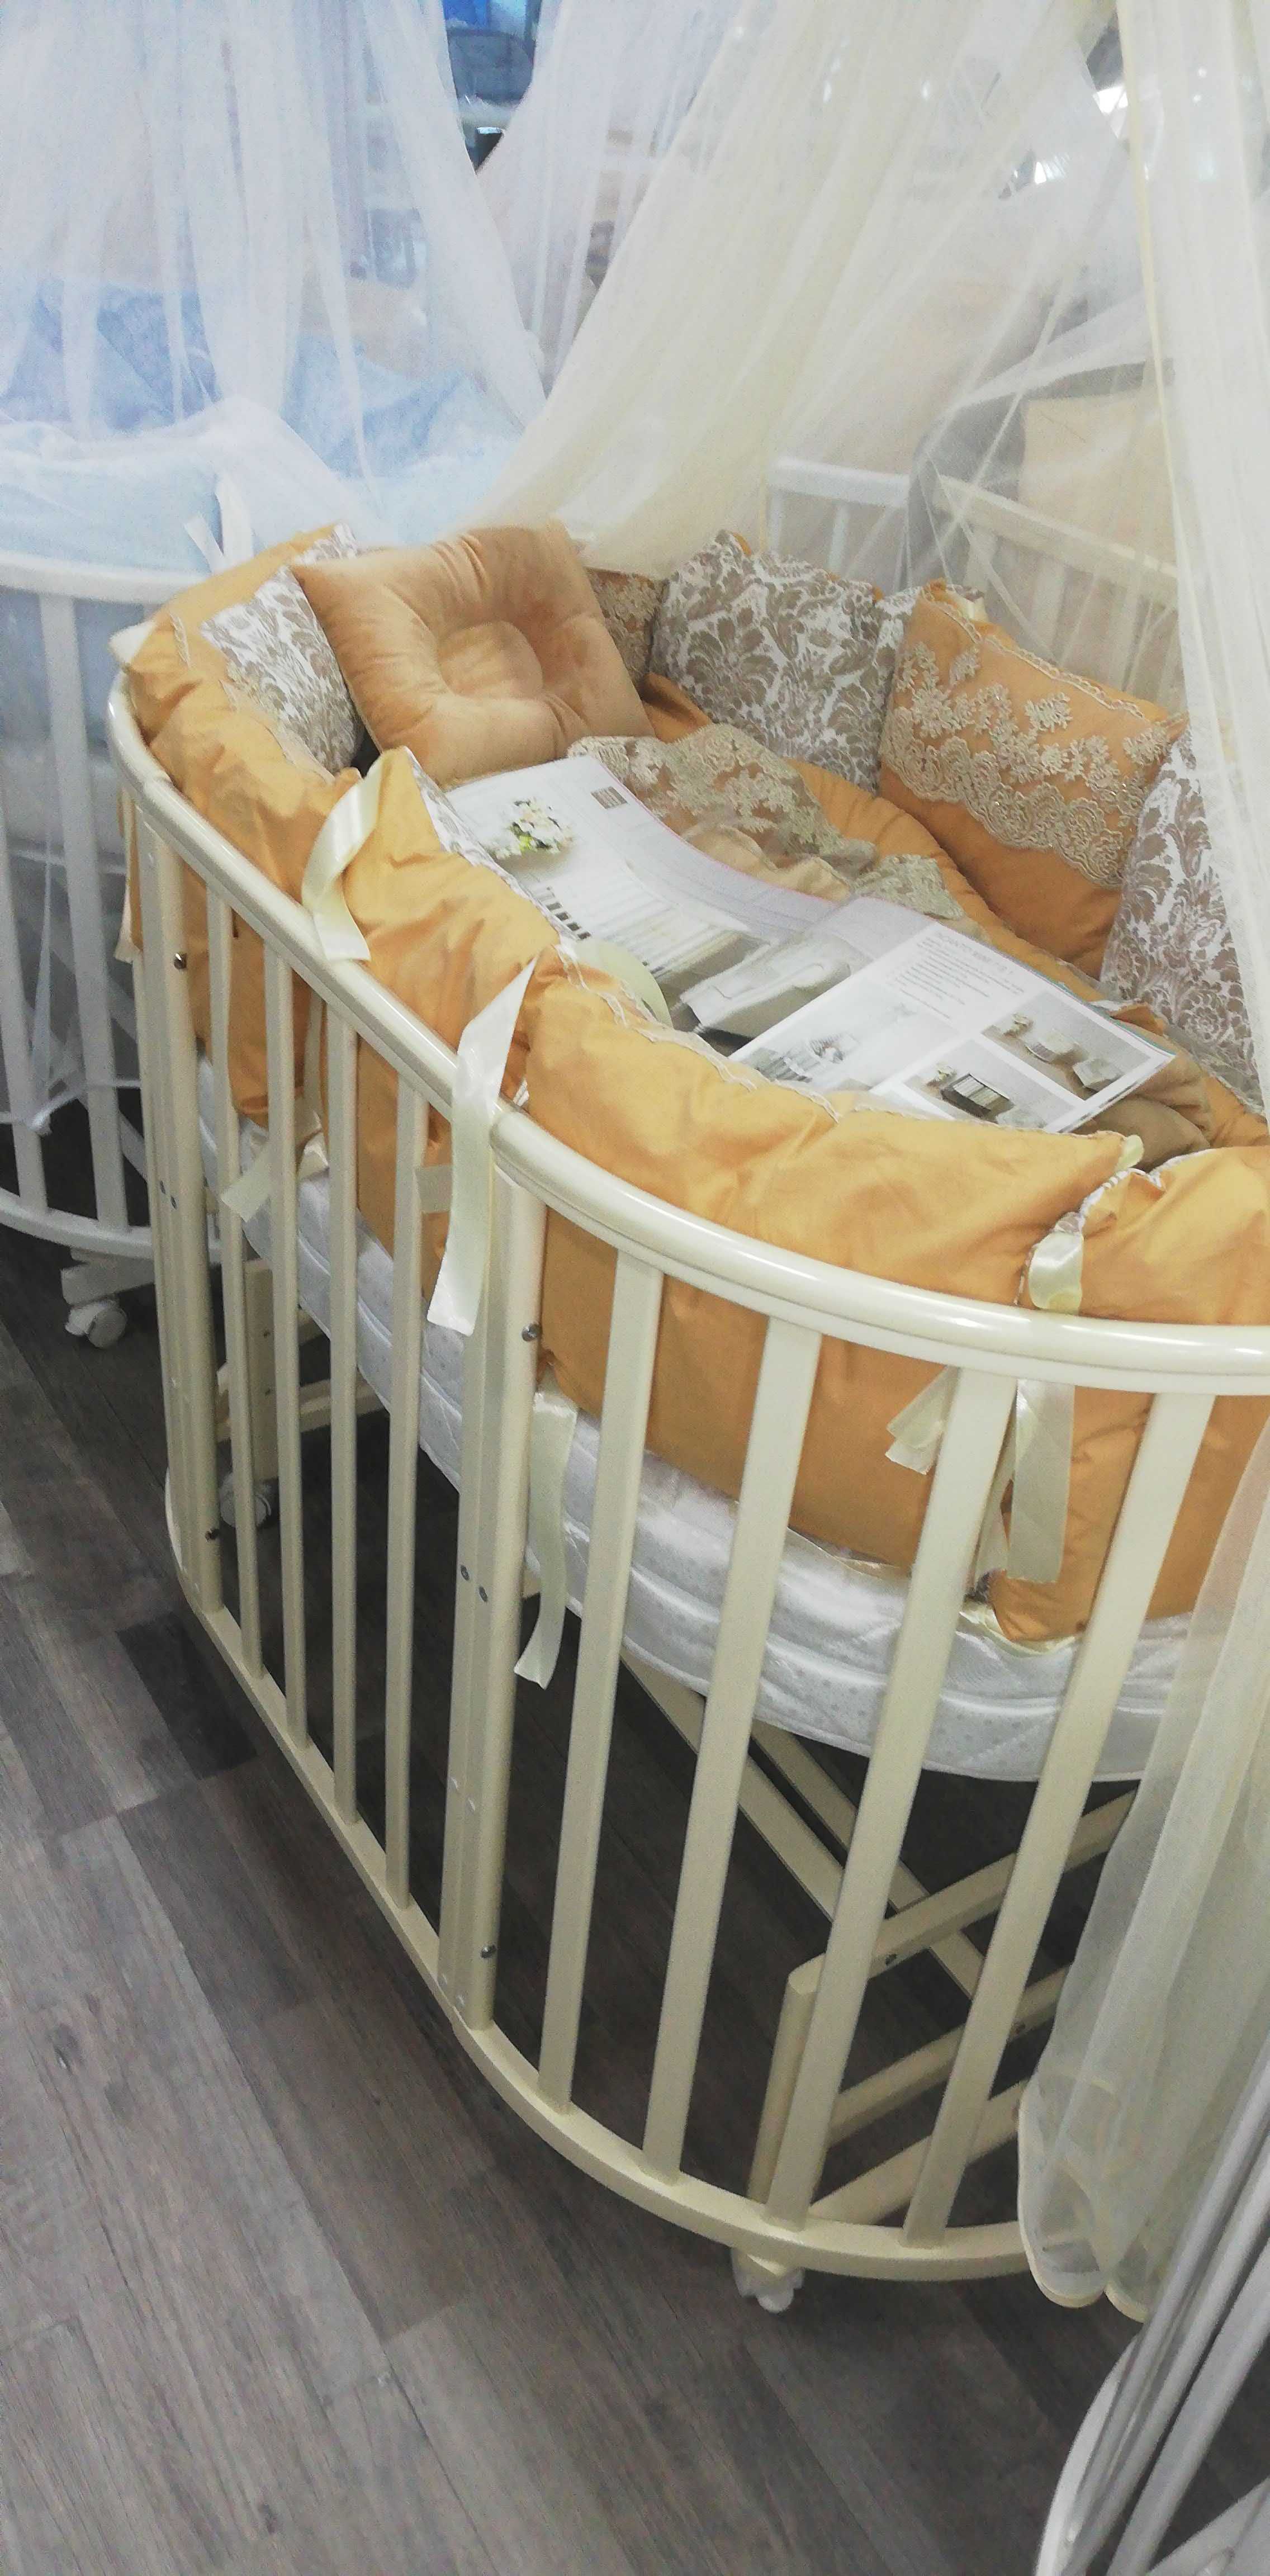 Детская кровать Incanto mimi 7 в 1